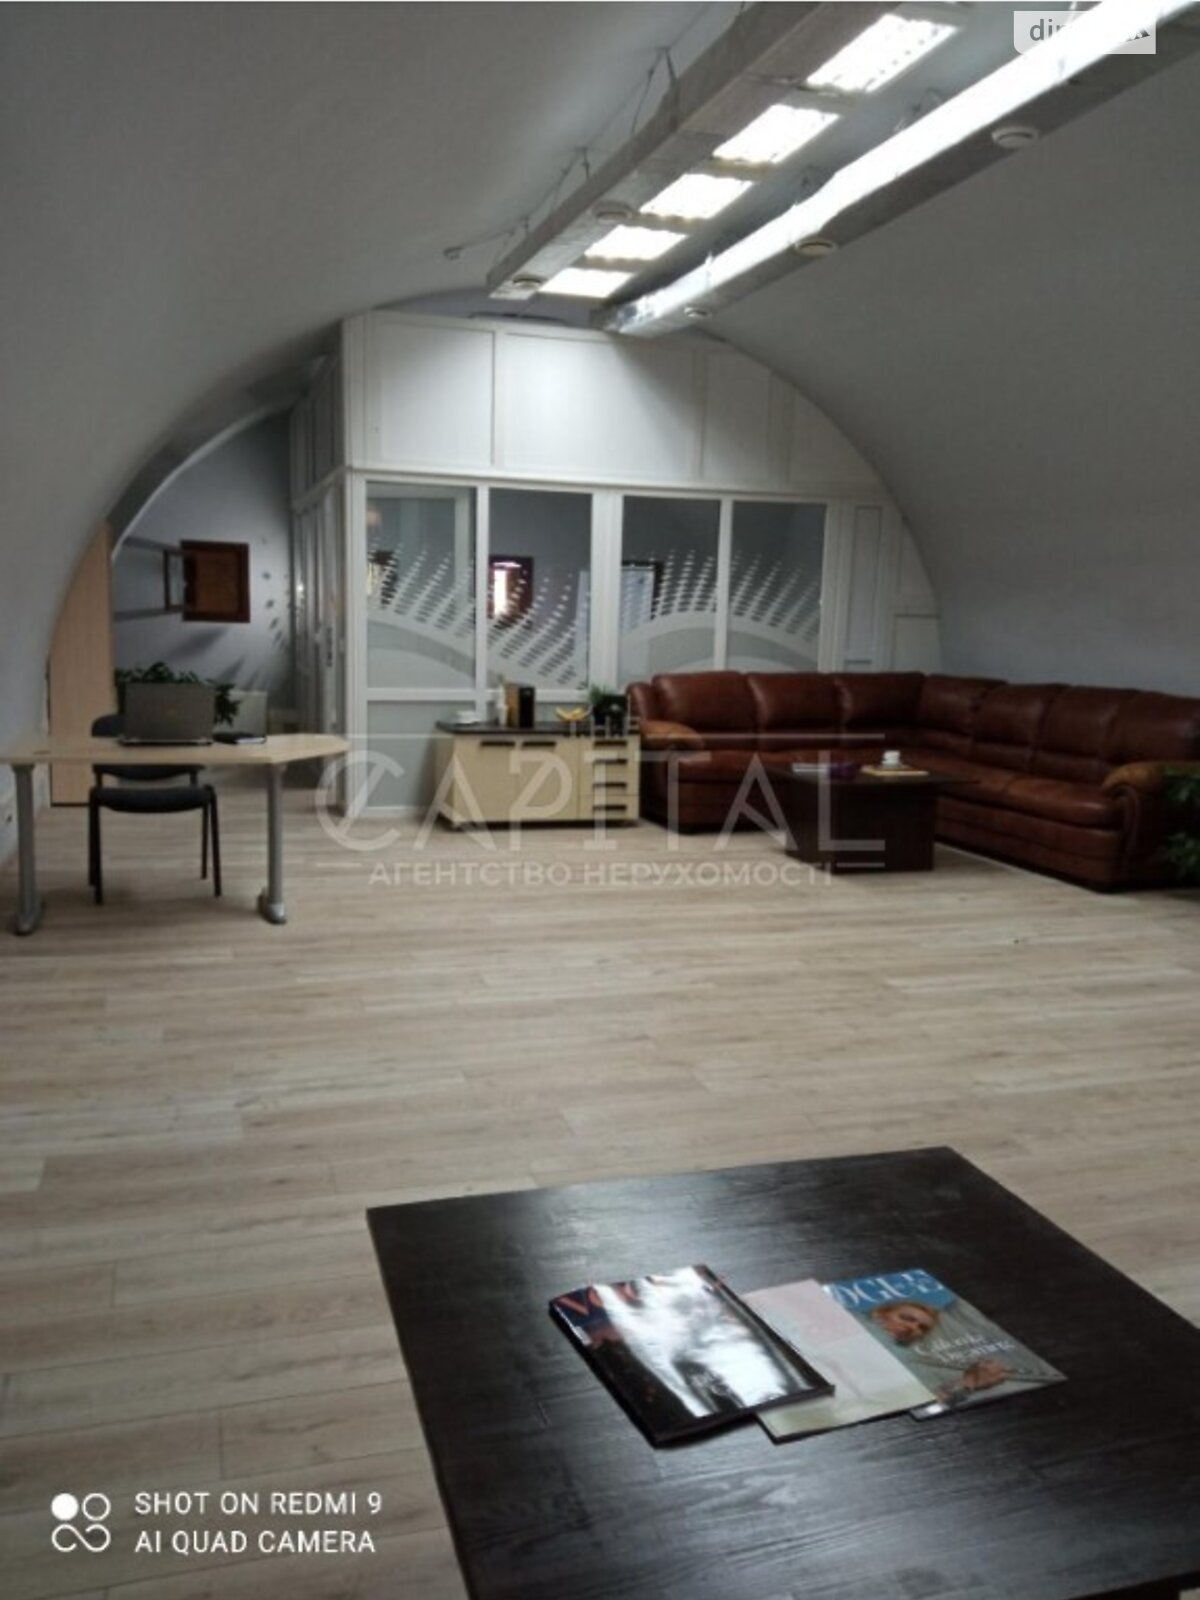 Аренда офисного помещения в Киеве, Рыбальская улица 22, помещений - 2, этаж - 2 фото 1